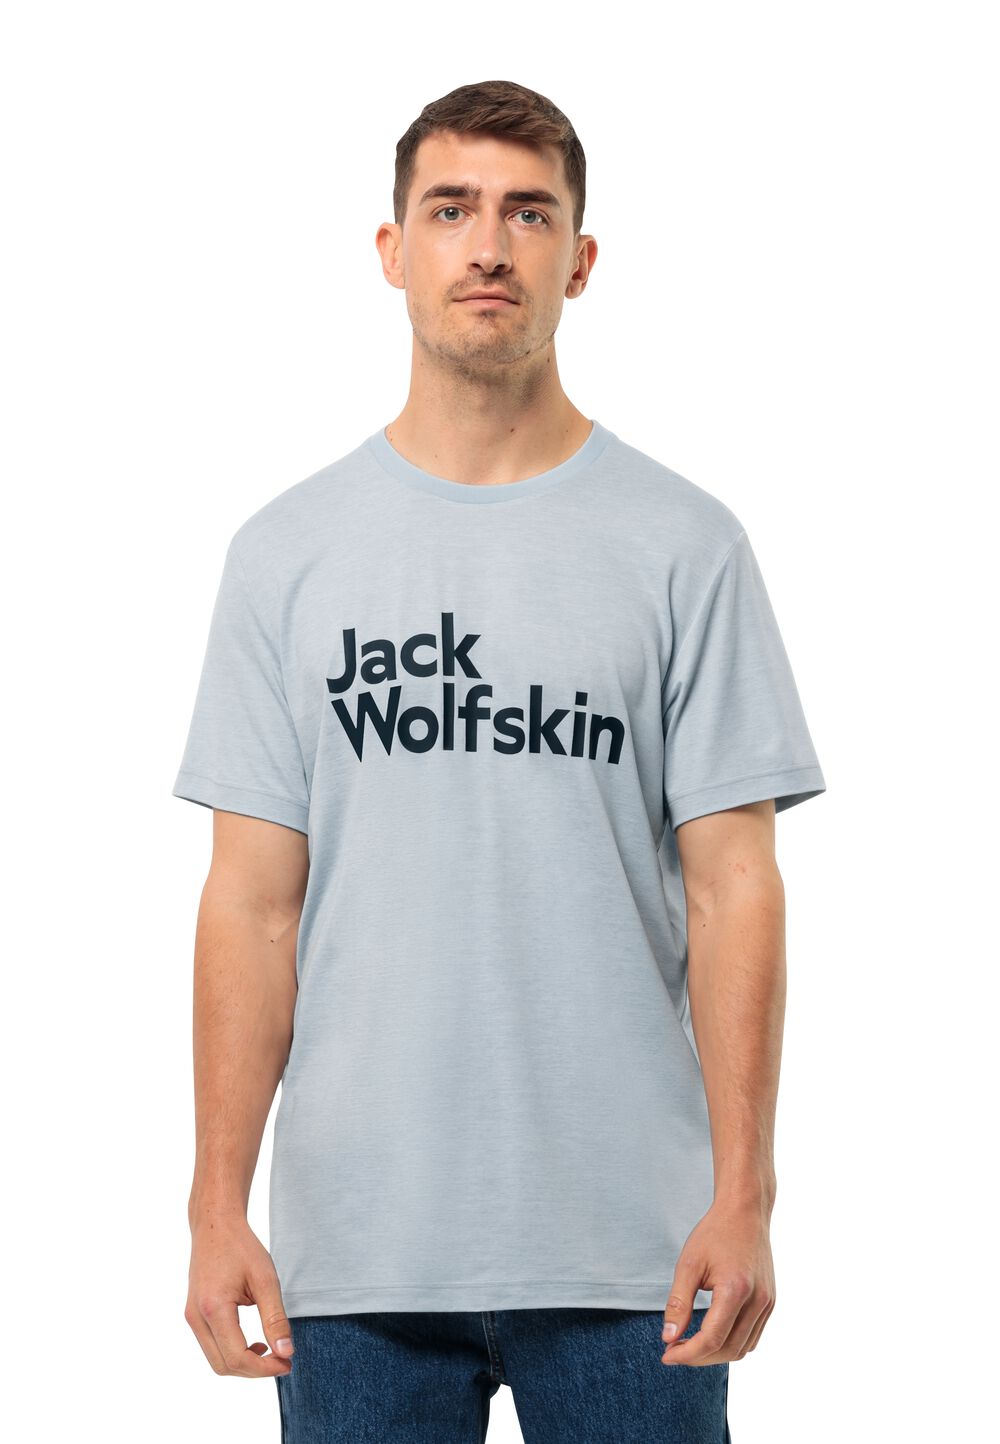 Jack Wolfskin Funktionsshirt Herren Brand T-Shirt Men M soft blue soft blue von Jack Wolfskin